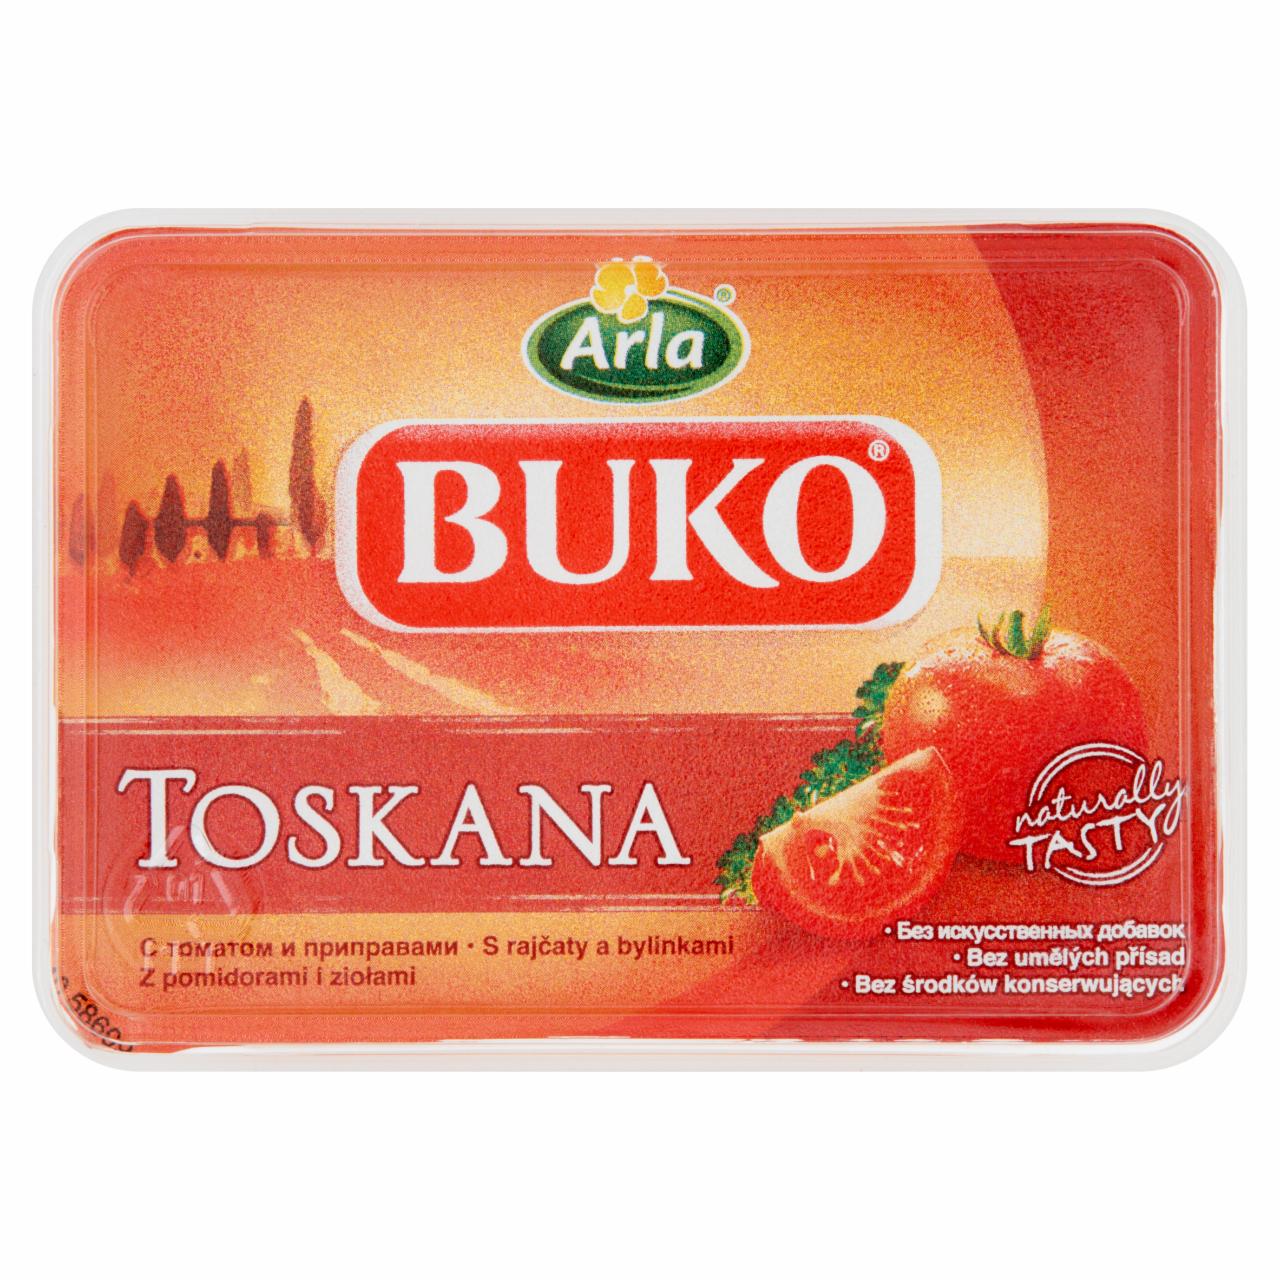 Zdjęcia - Arla Buko Toskana Serek kremowy z pomidorami i ziołami 150 g